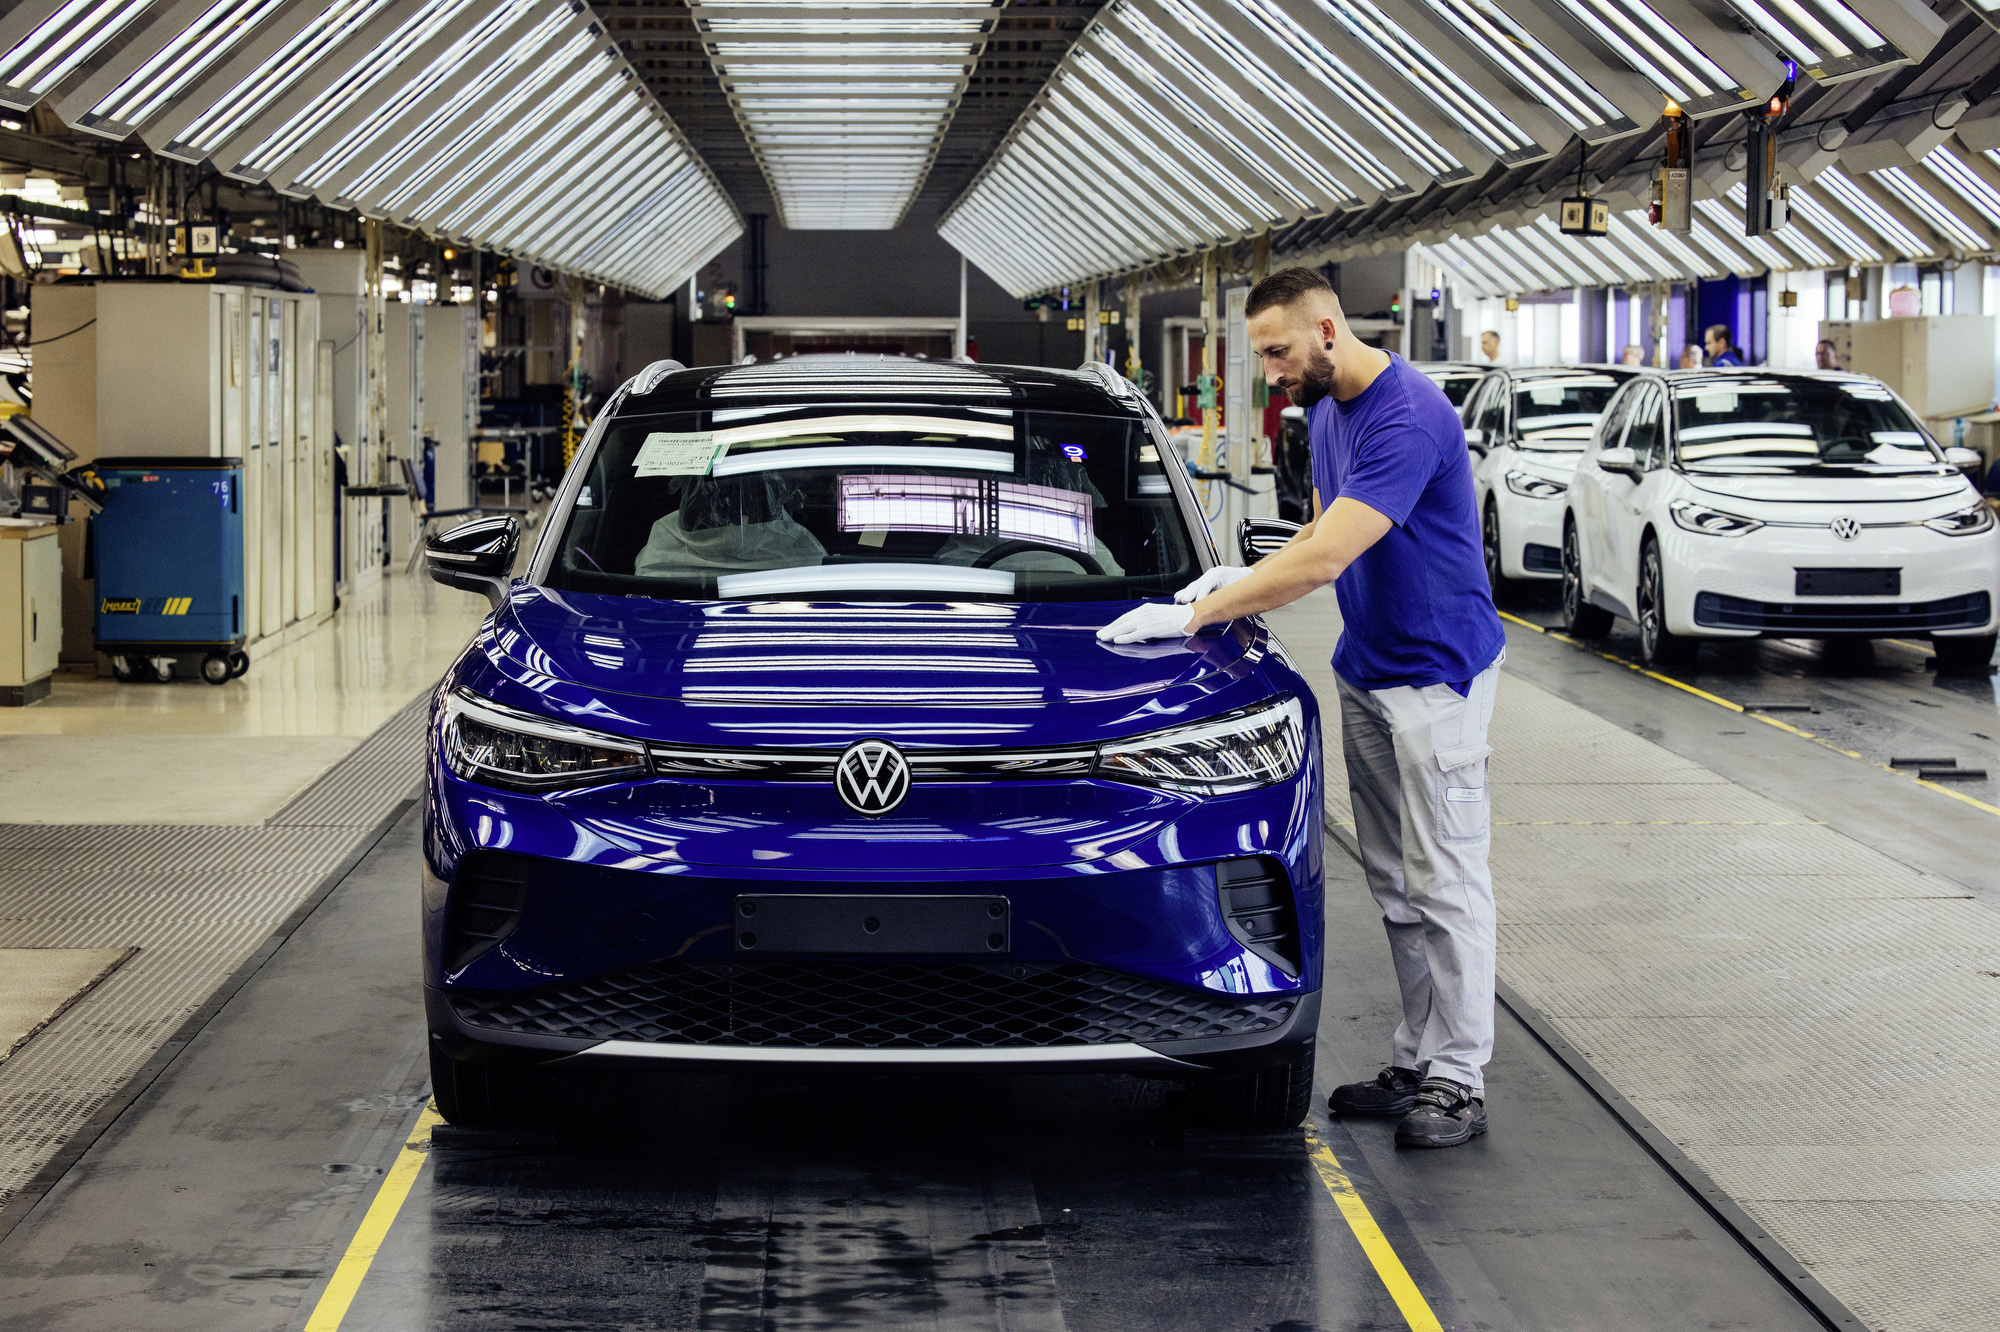 Дресс-код VW виноват в слабых продажах ID.4 в Китае, утверждает аналитик